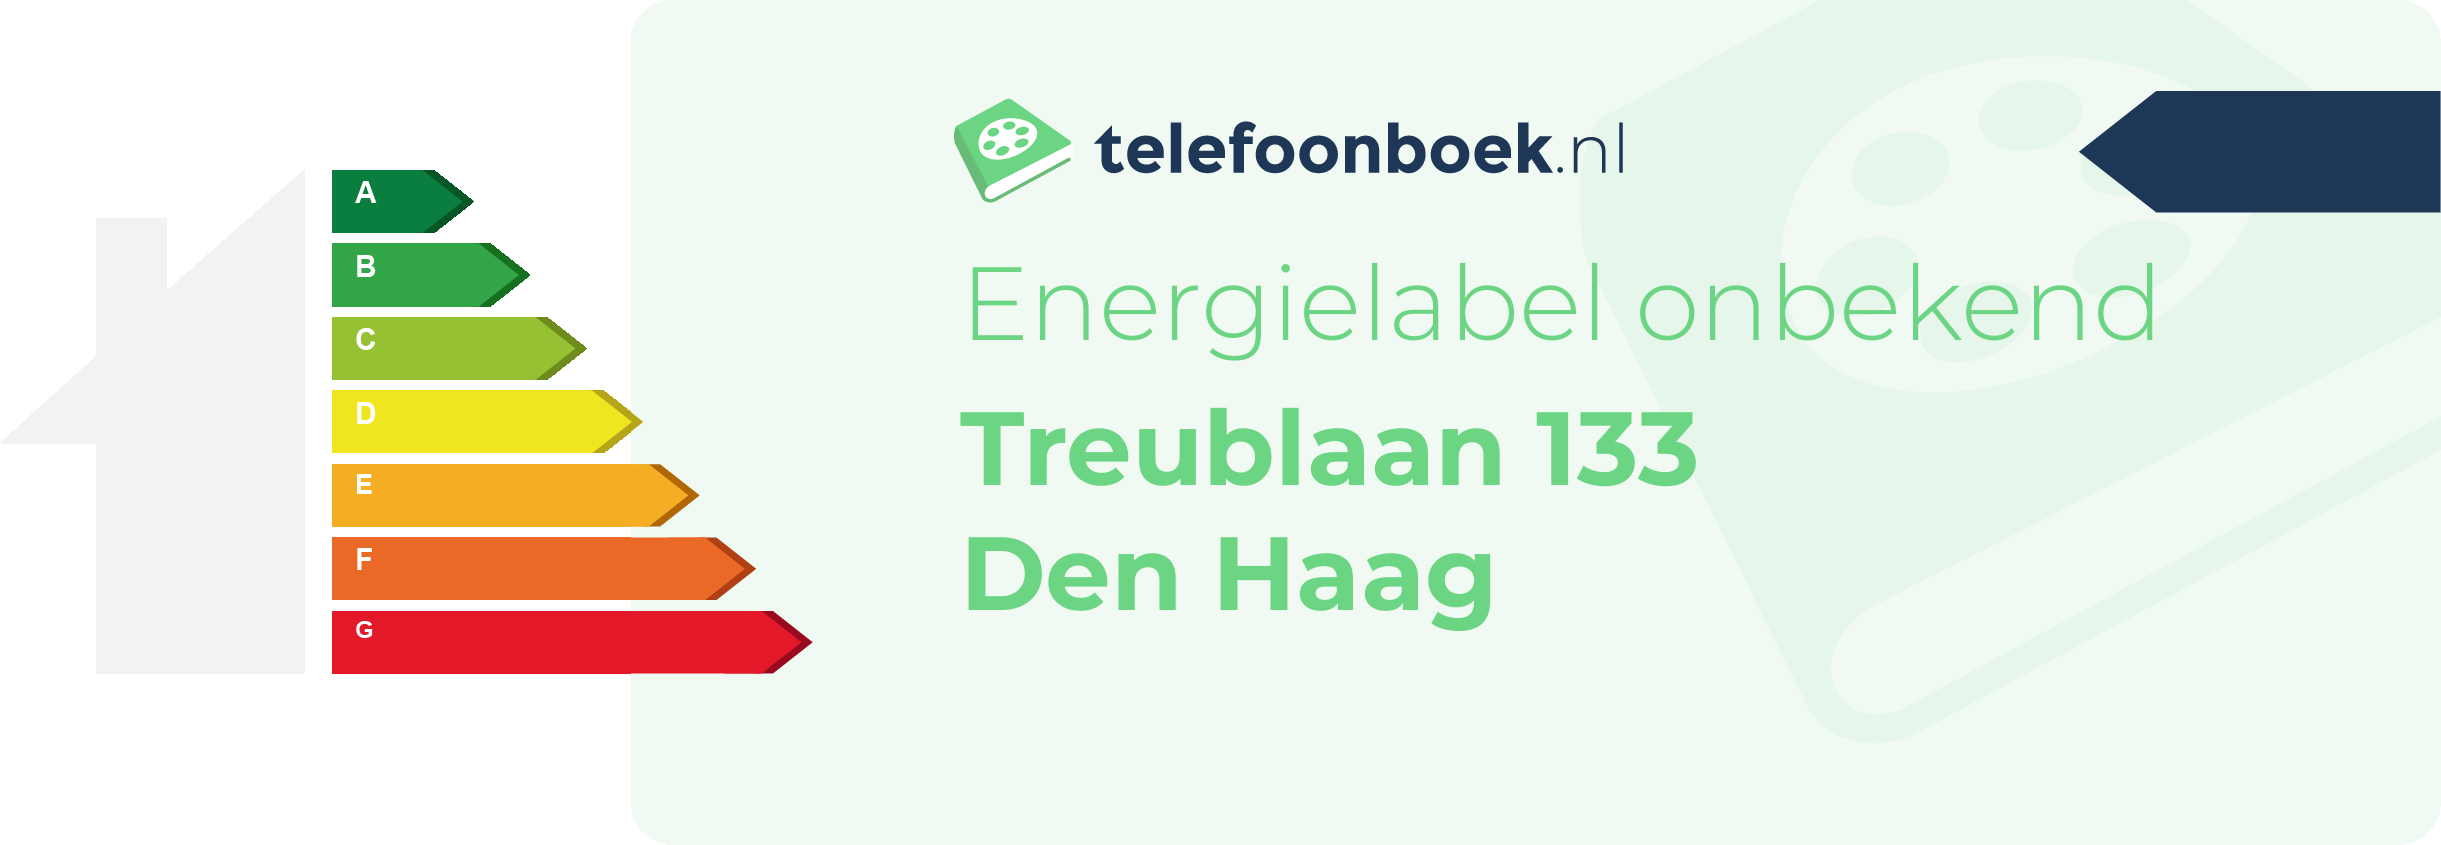 Energielabel Treublaan 133 Den Haag